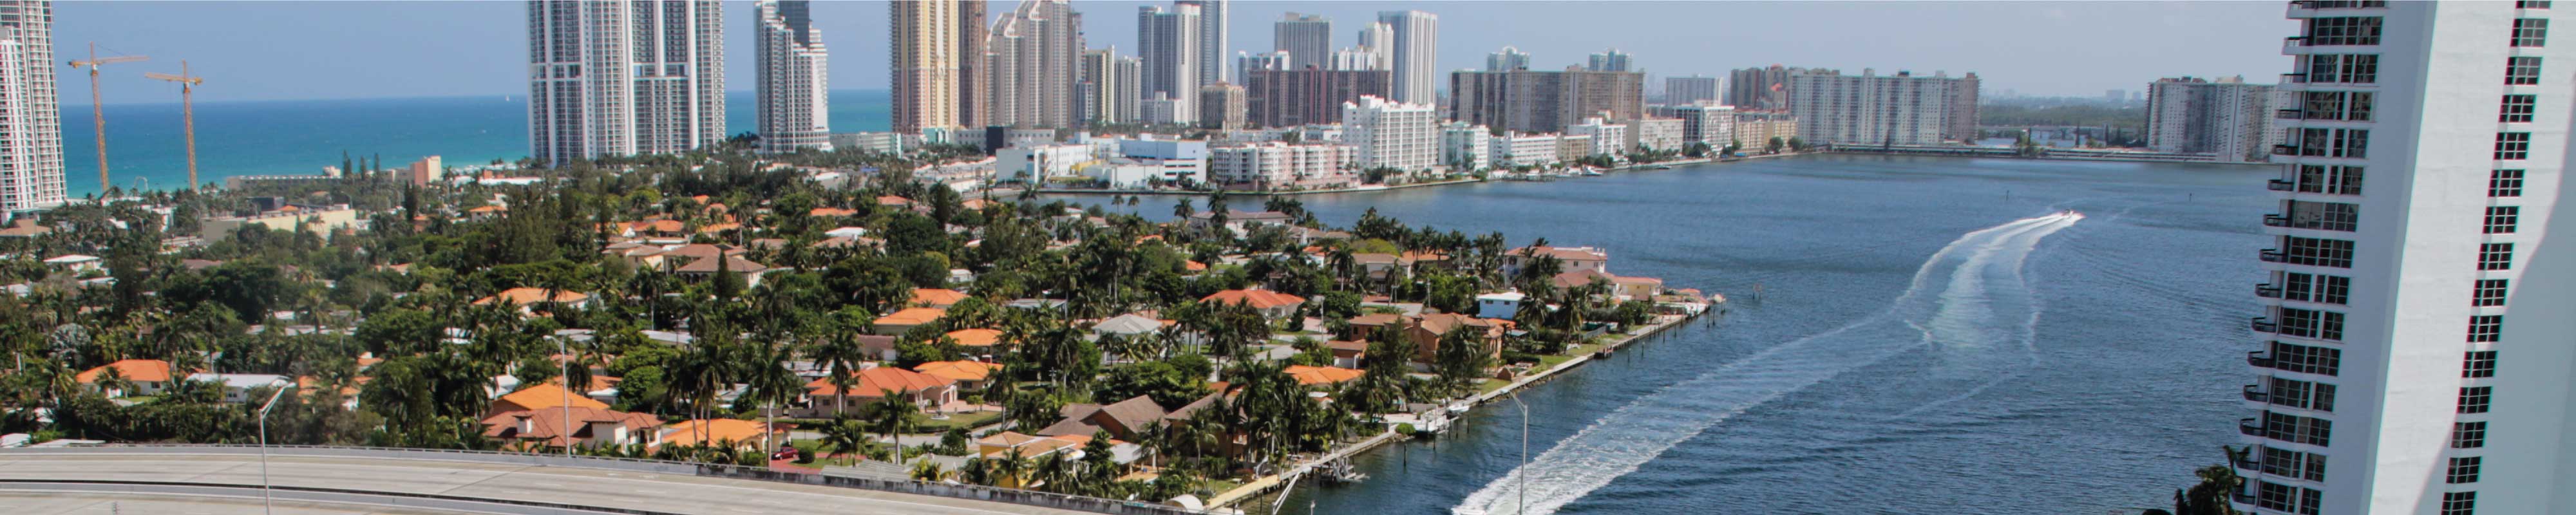 Gepäckaufbewahrung | Miami Hafen in Miami - Nannybag